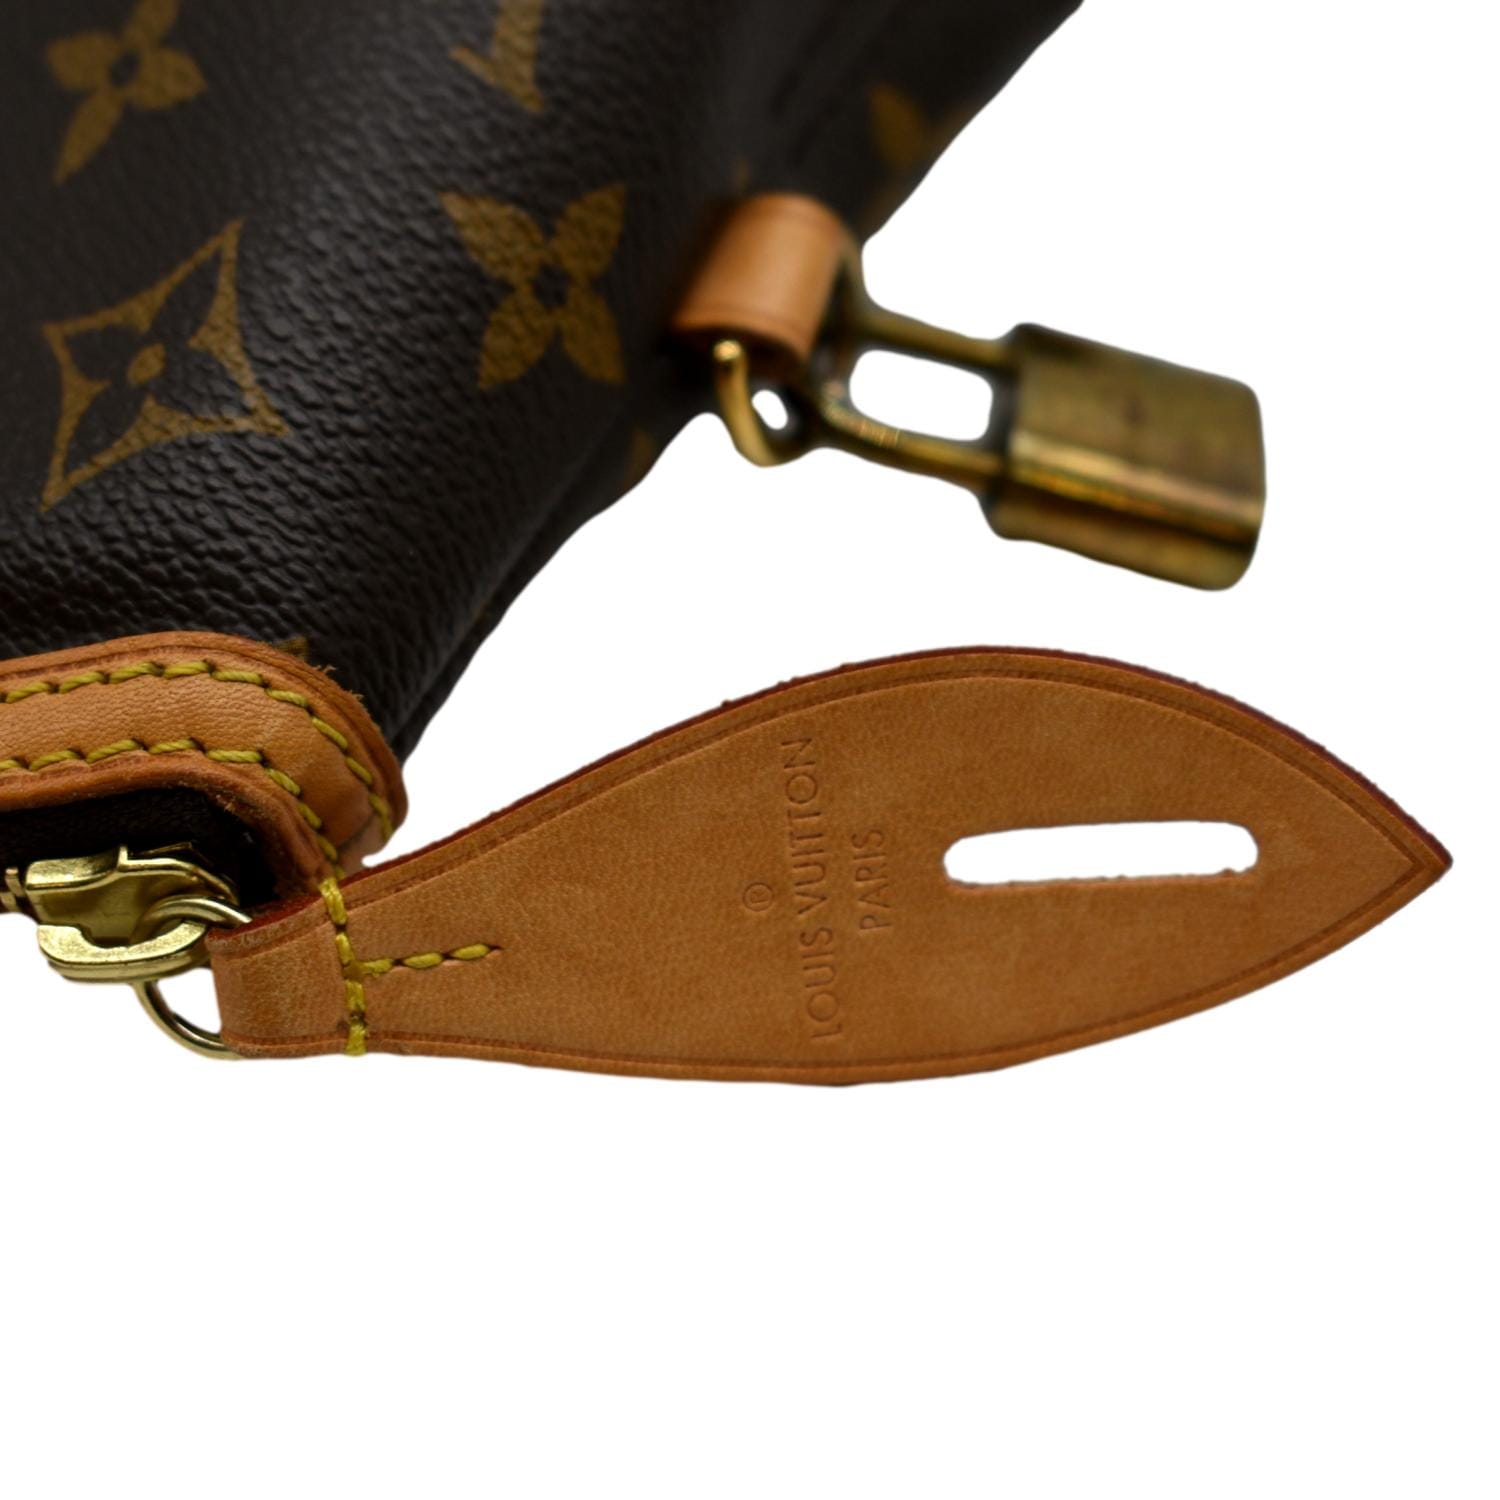 Louis Vuitton, Bags, Authentic Louis Vuitton Lockit Vertical